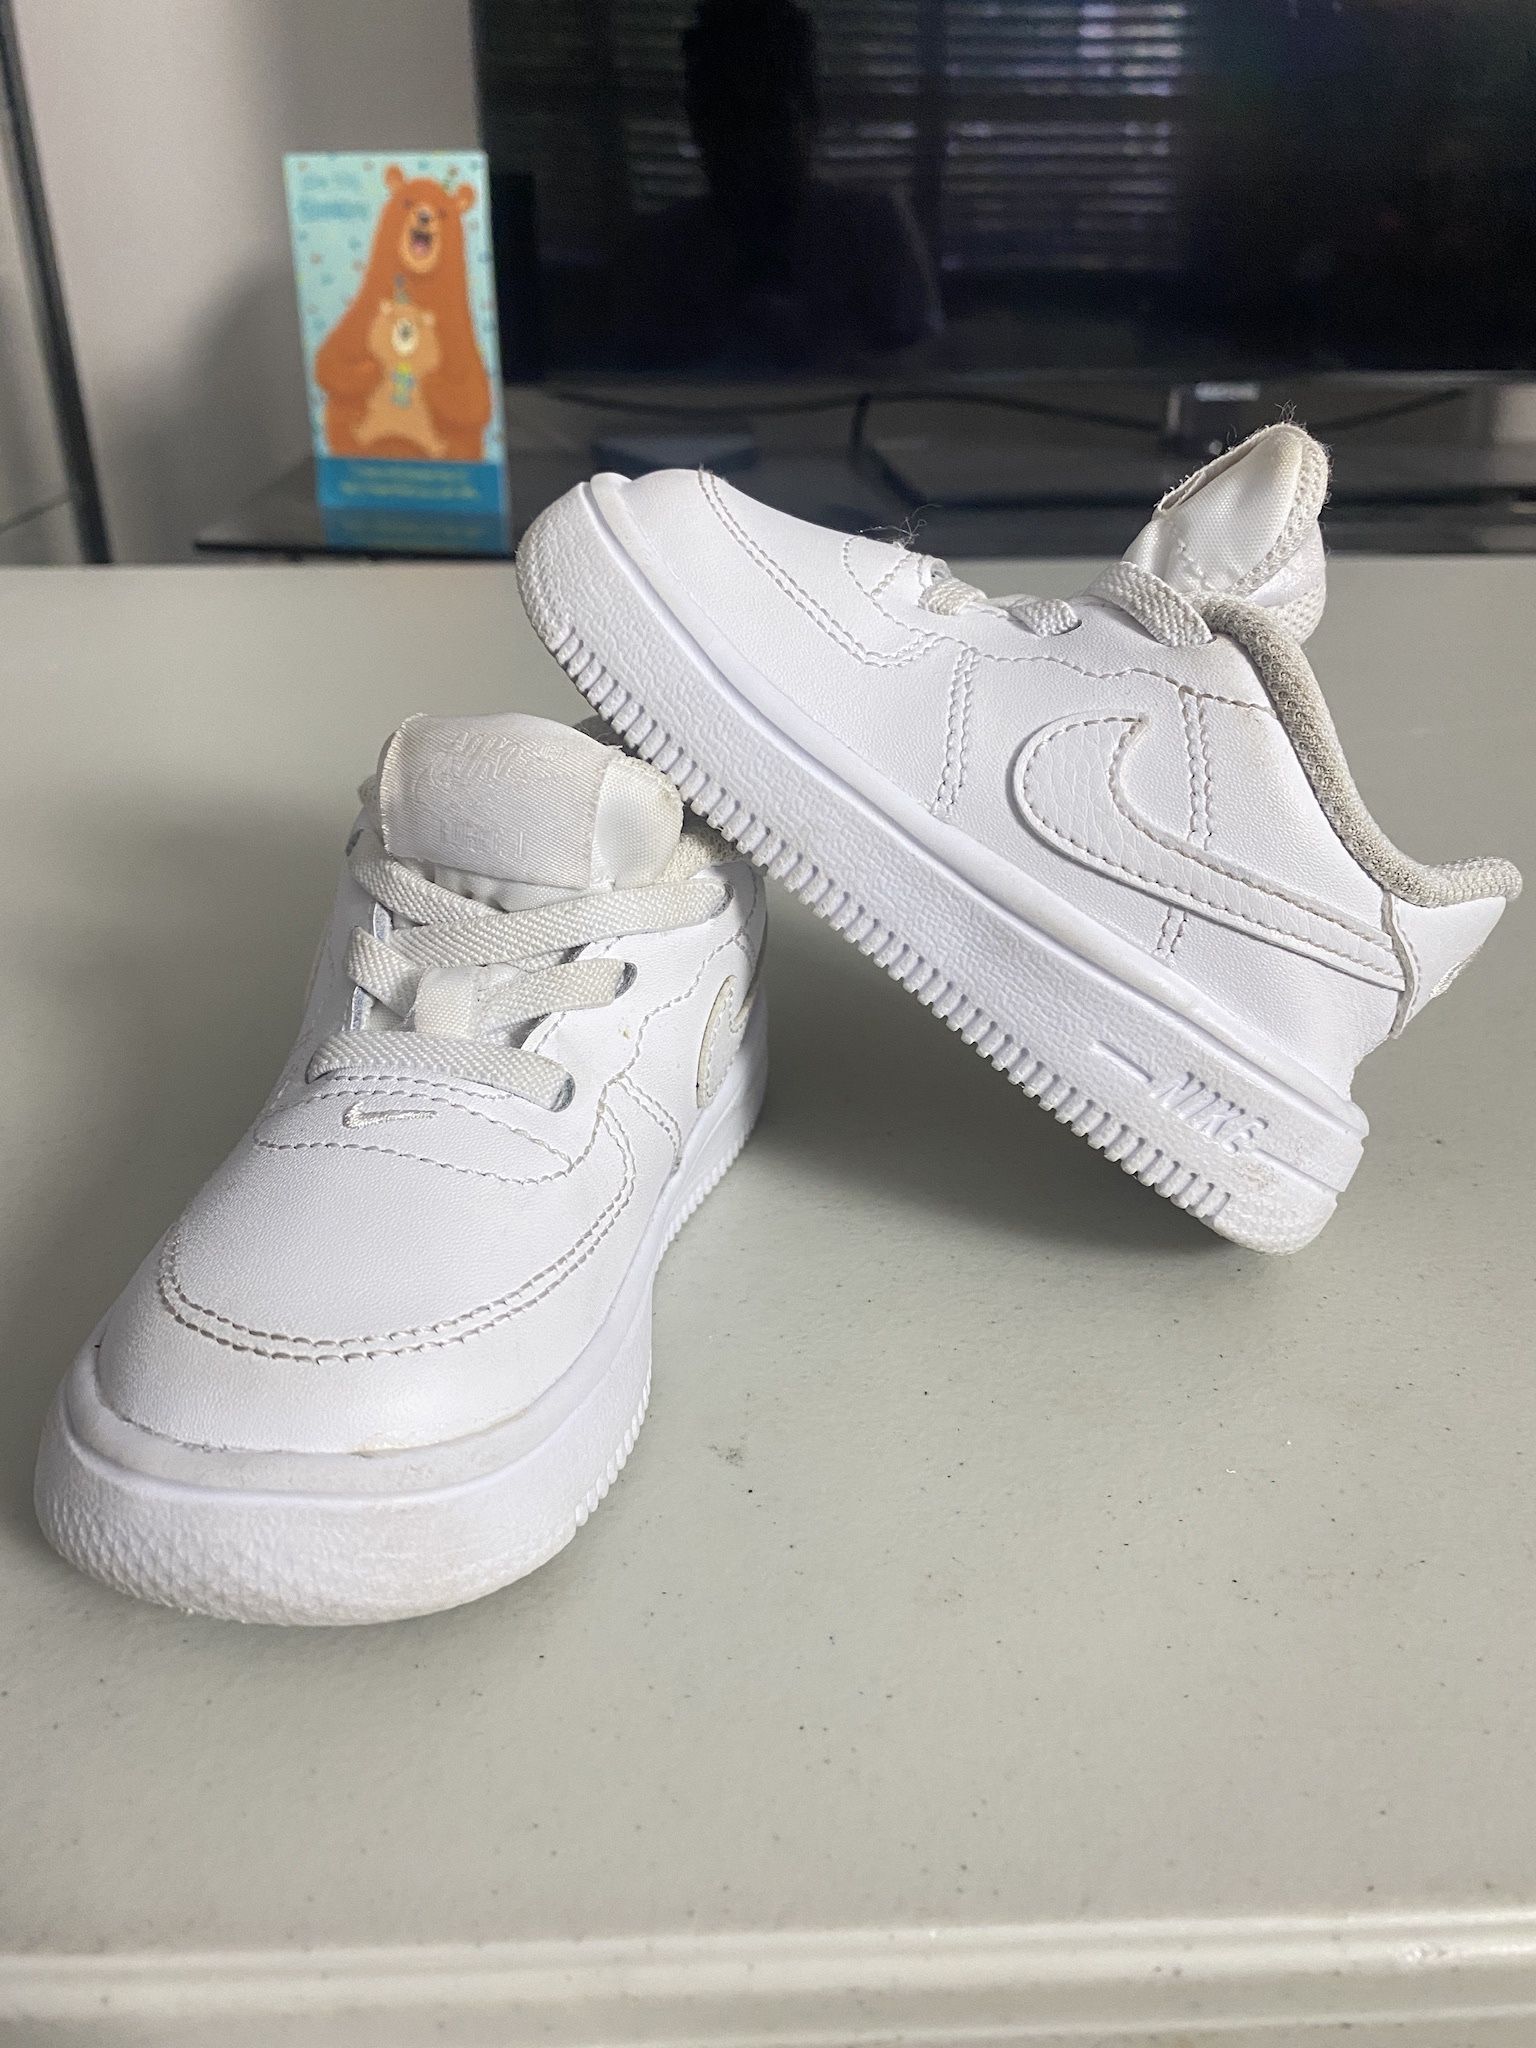 Toddler Nikes Size 6c $35